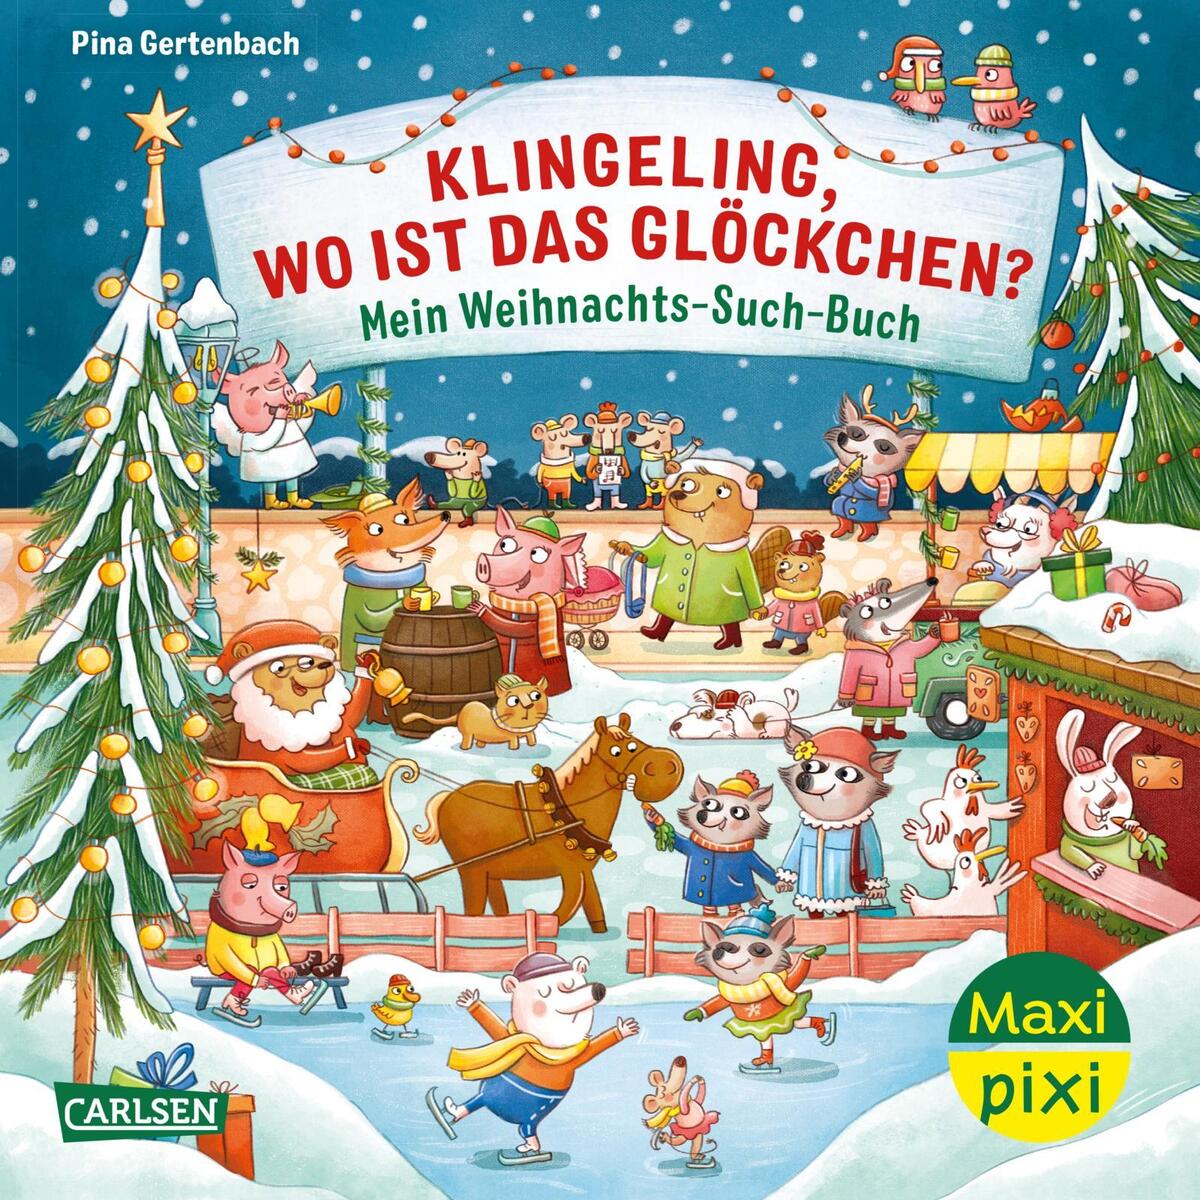 Maxi Pixi 447: VE 5: Klingeling, wo ist das Glöckchen? Mein Weihnachts-Such-Buch... von Carlsen Verlag GmbH